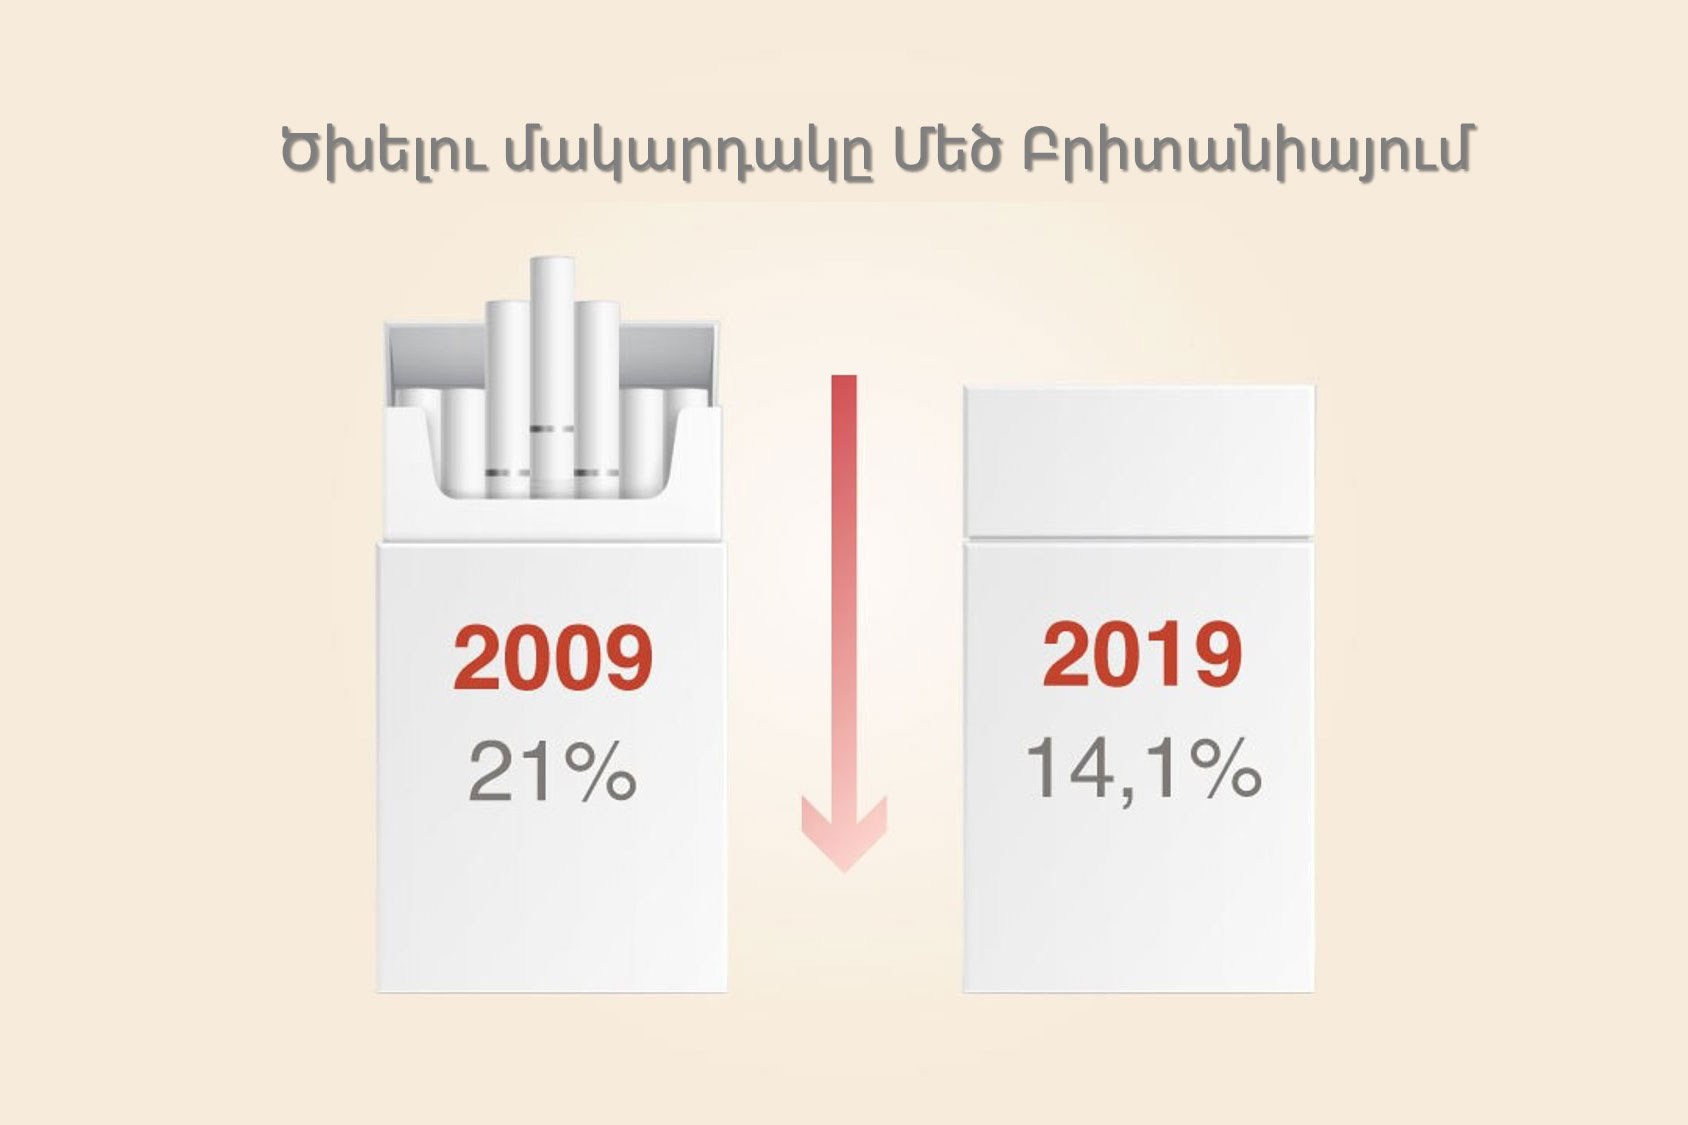 Ծխելու մակարդակը աշխարհում և Հայաստանում։ Ծխելու օրենքն աշխարհում